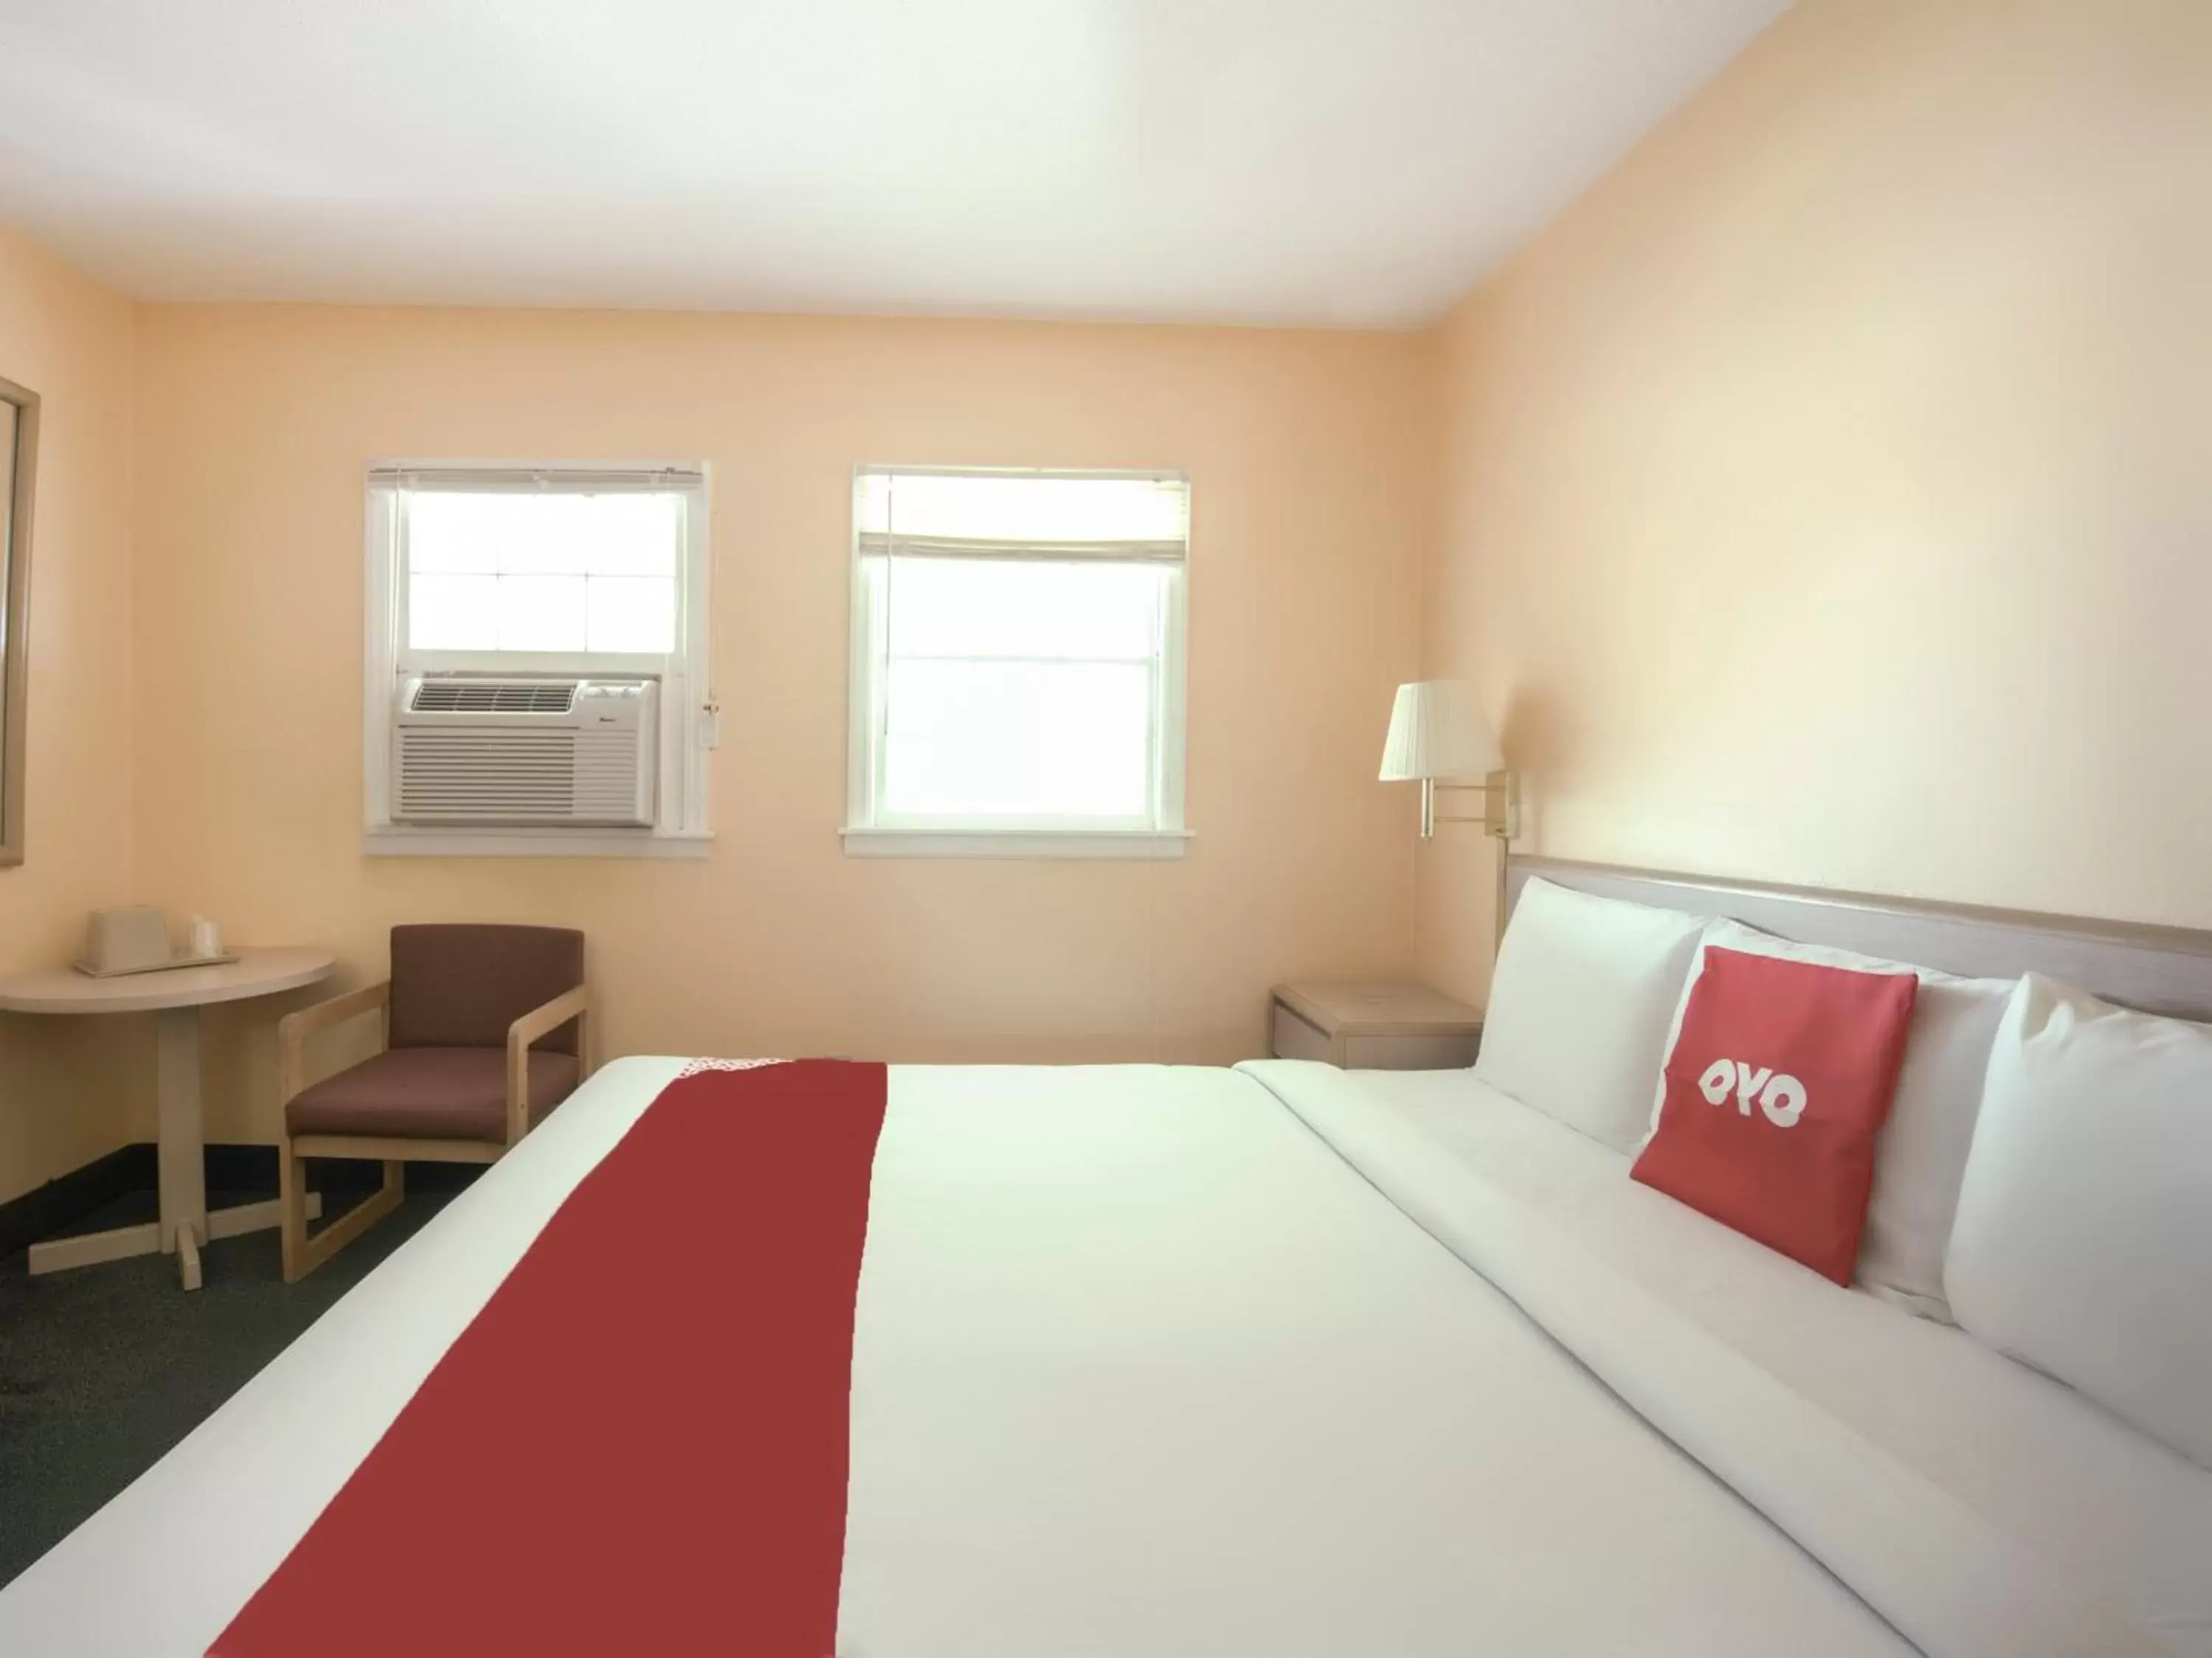 Bedroom, Bed in OYO Hotel Durham West Hills